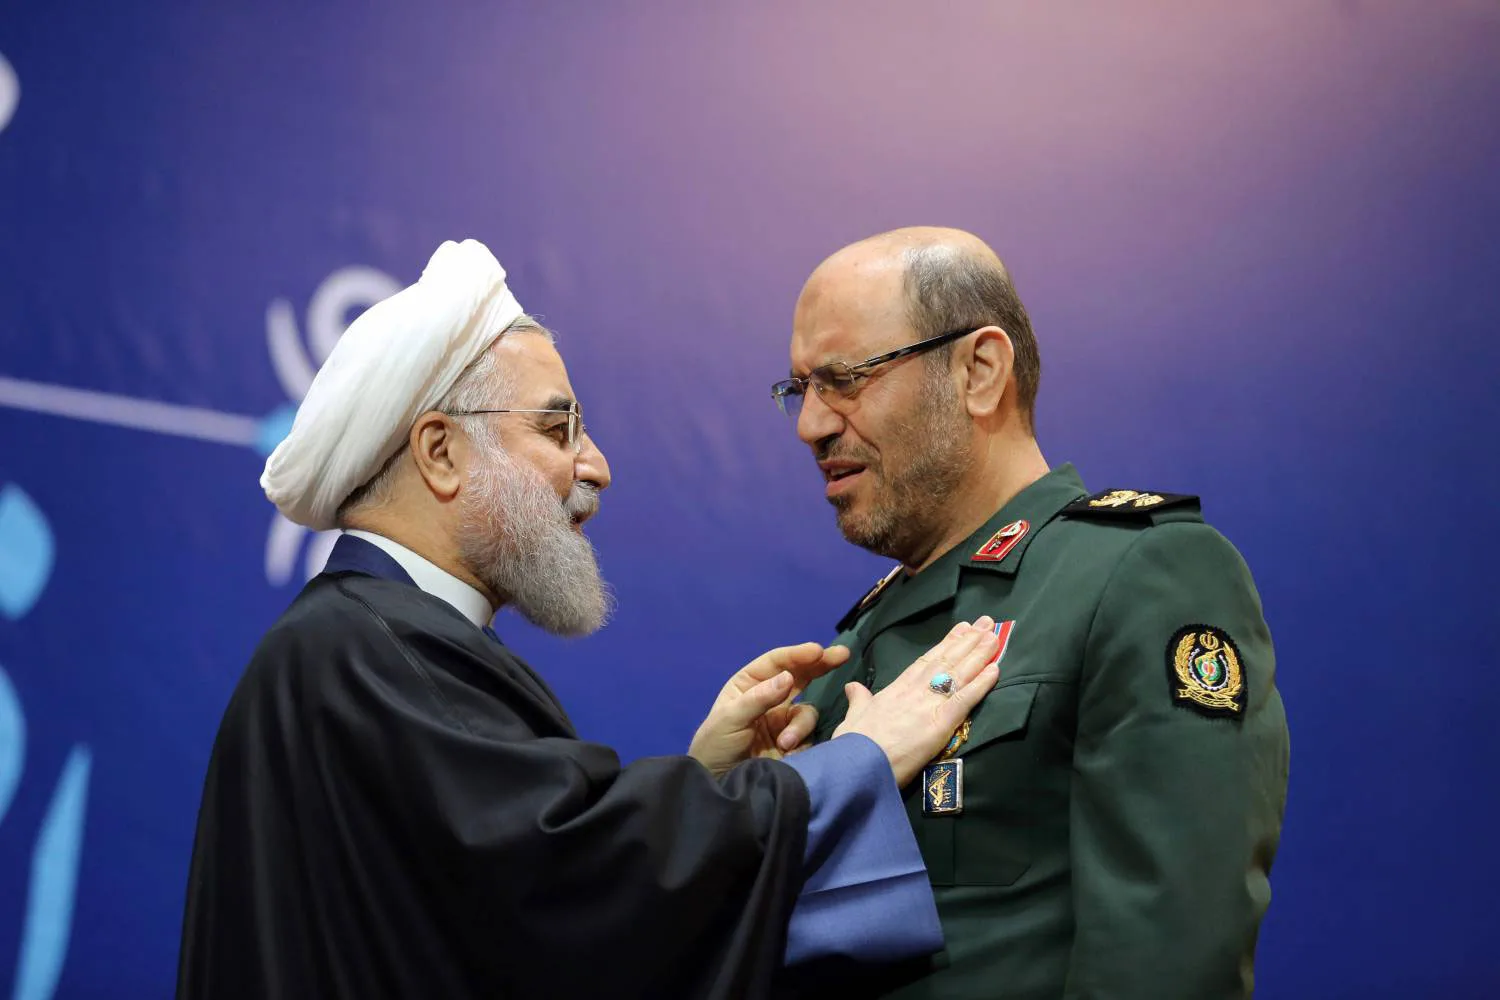 يعد حسين دهقاني مستشار خامنئي لشؤون الصناعات الدفاعية (يمين) أحد أبرز المرشحين لخلافة روحاني (يسار)